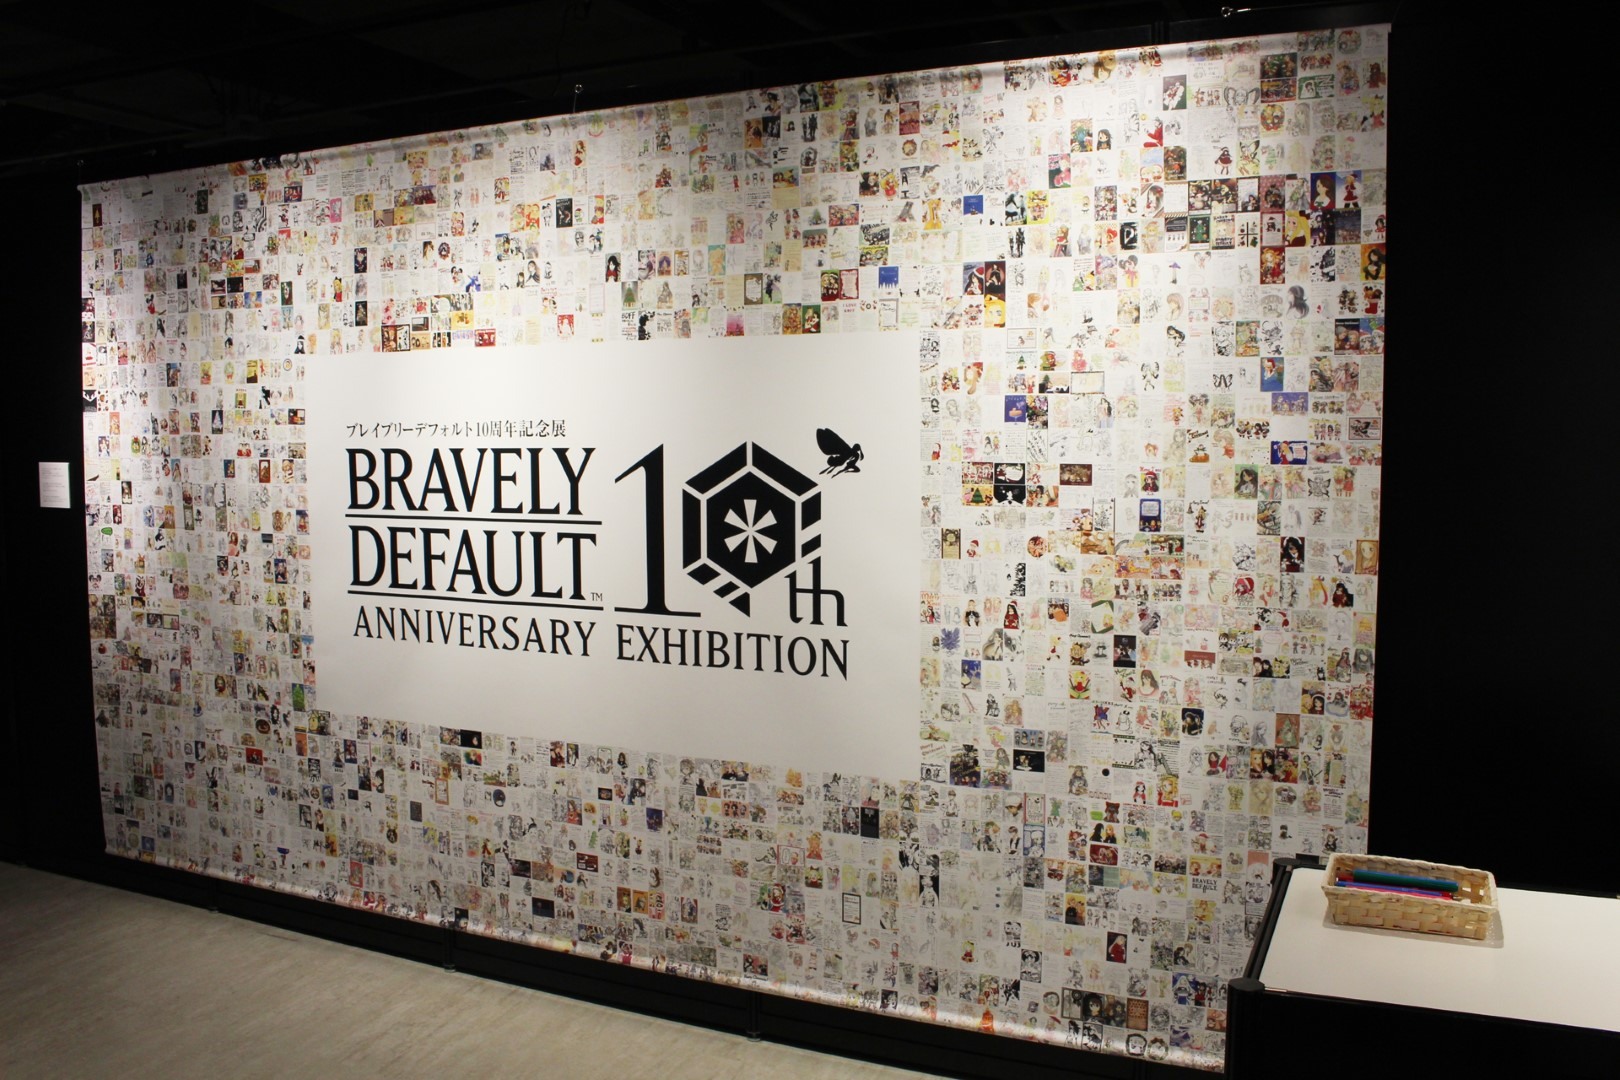 日本《Bravely Default》10 周年记念展现场报导展示超过两百张以上插图原画插图56